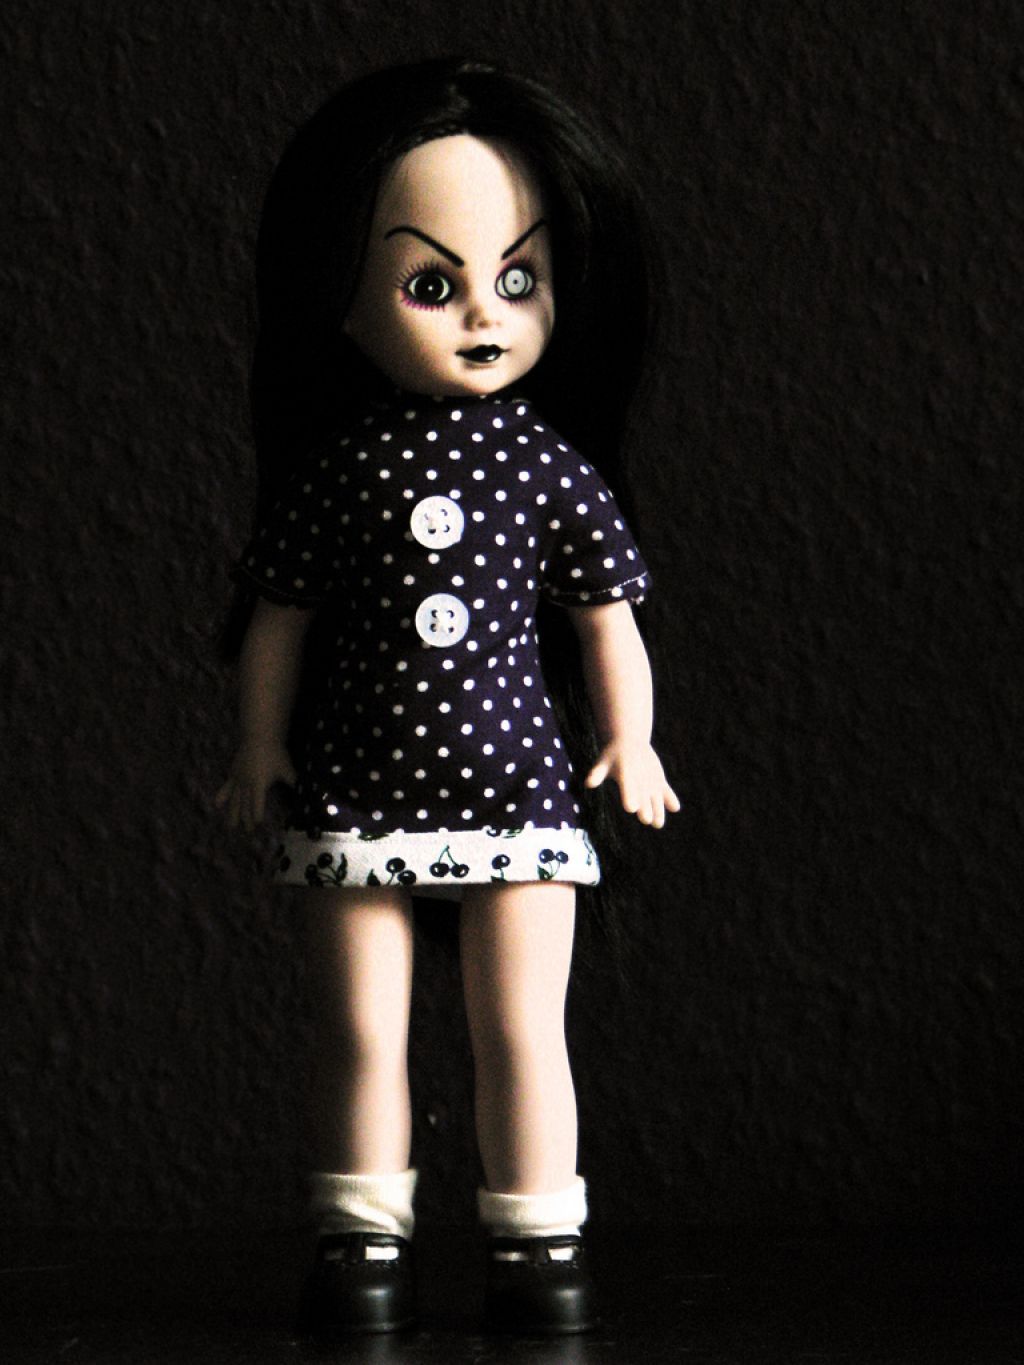 living dead doll8 Morbid Living Dead Dolls